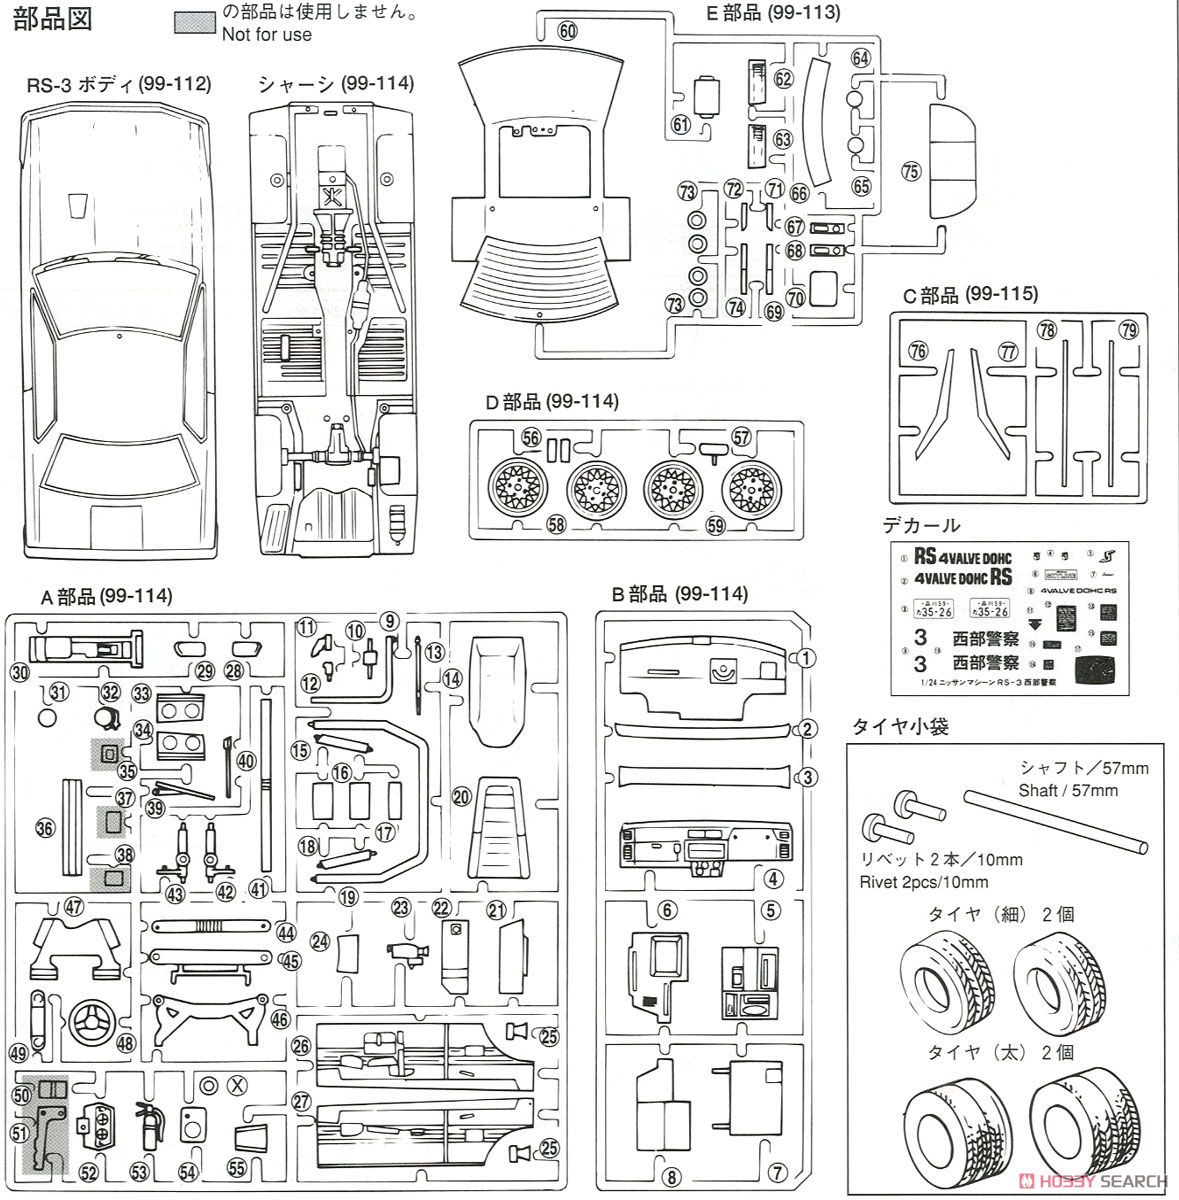 マシンRS-3 (プラモデル) 設計図6